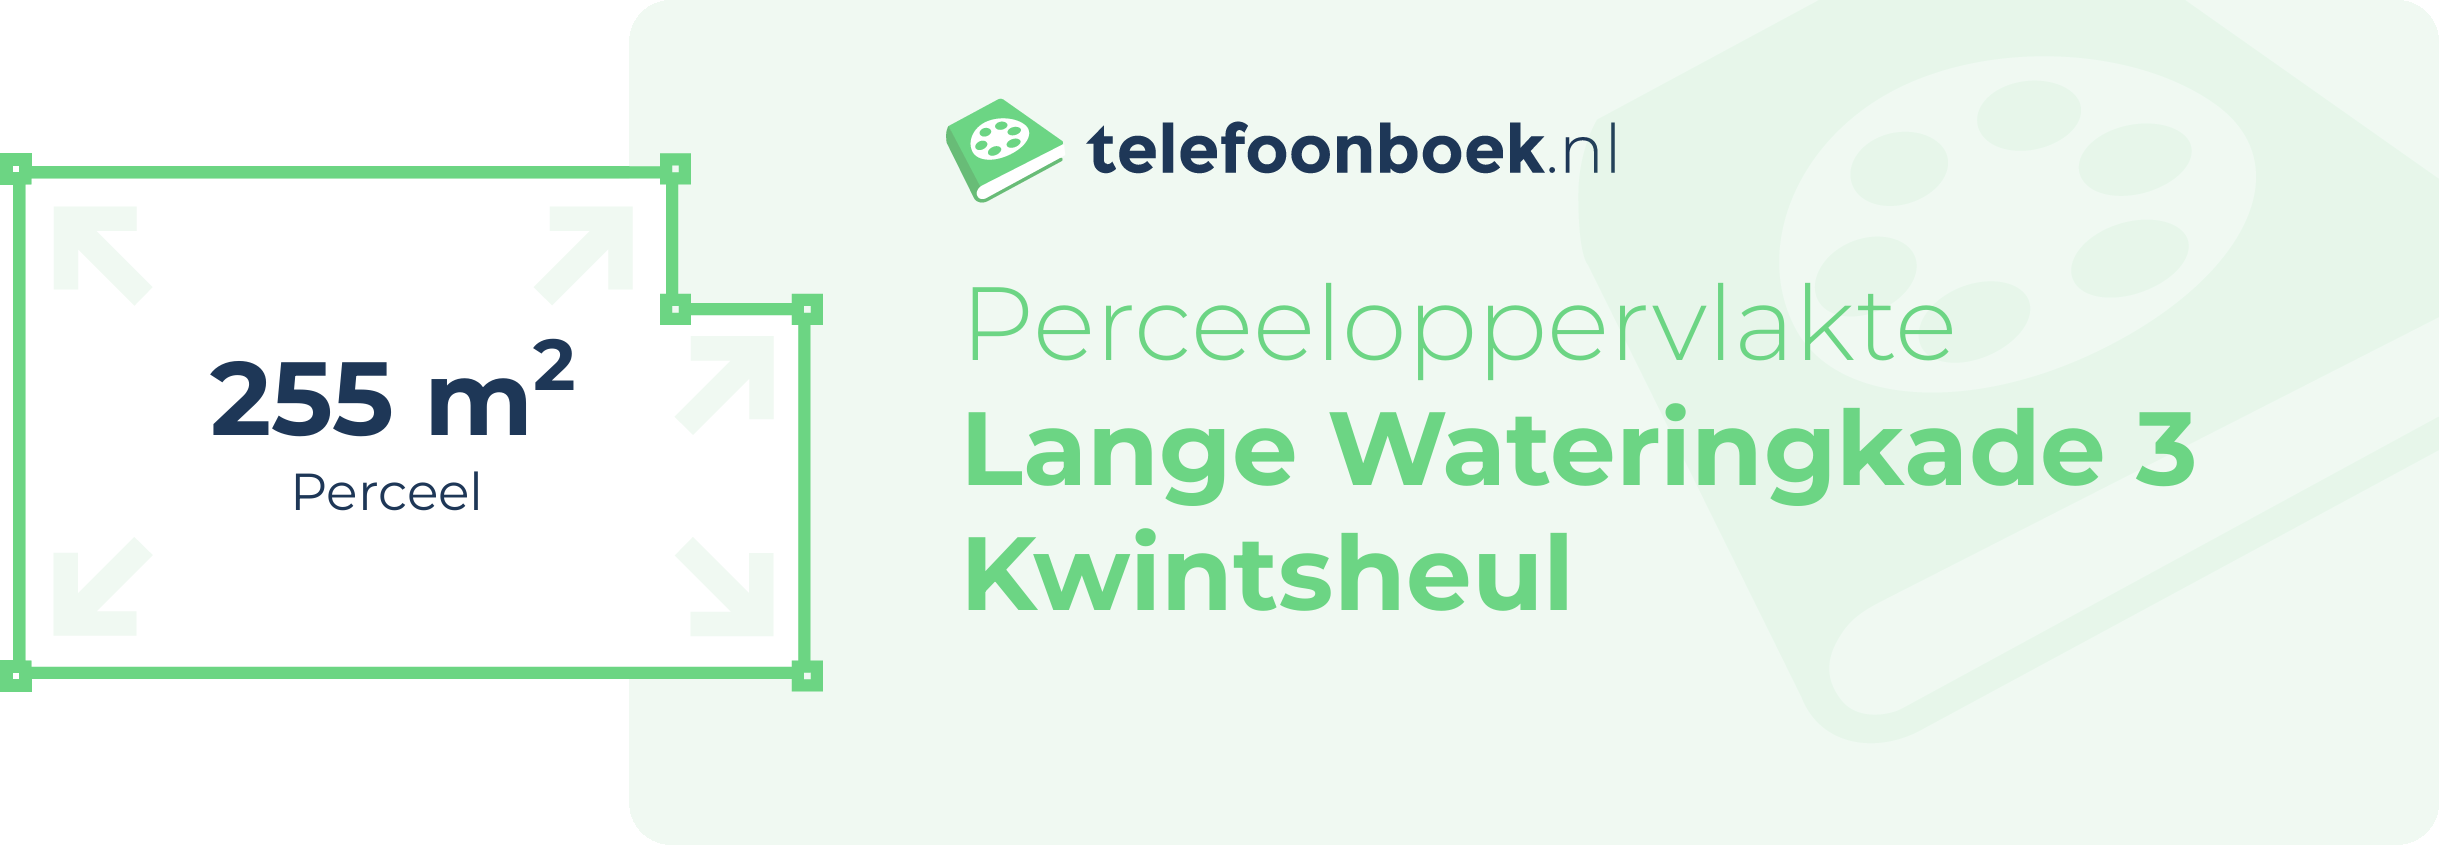 Perceeloppervlakte Lange Wateringkade 3 Kwintsheul